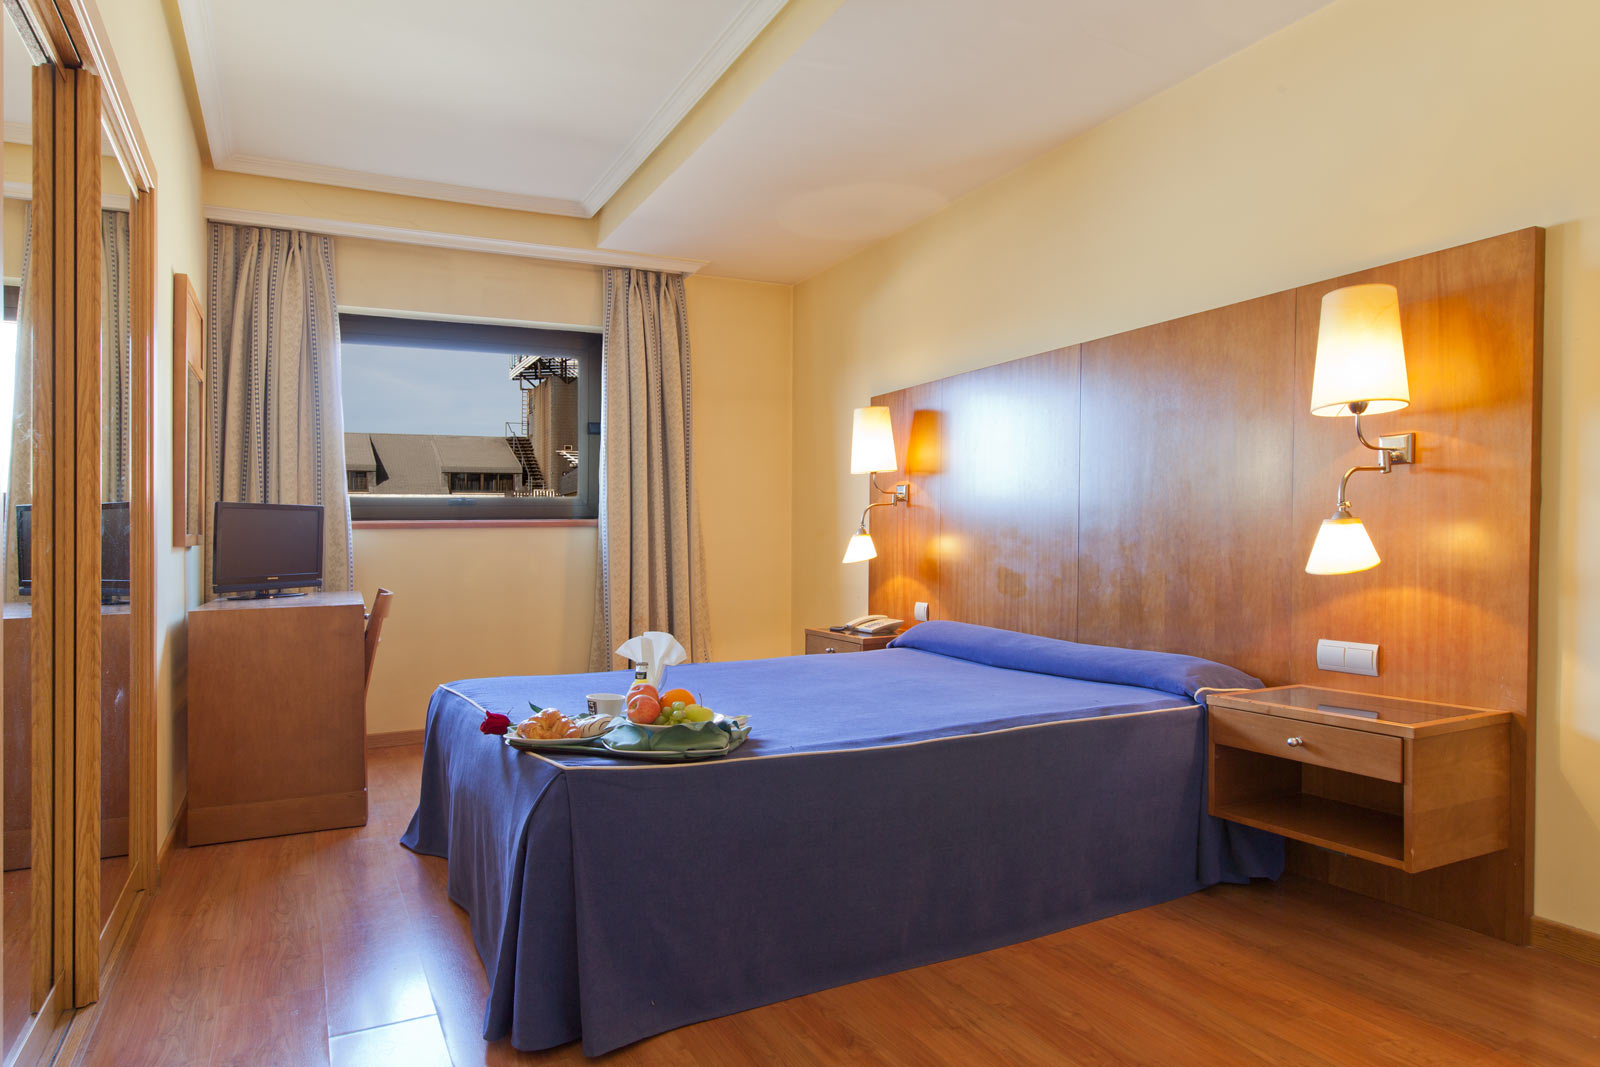 Hotel Galaico | Rooms